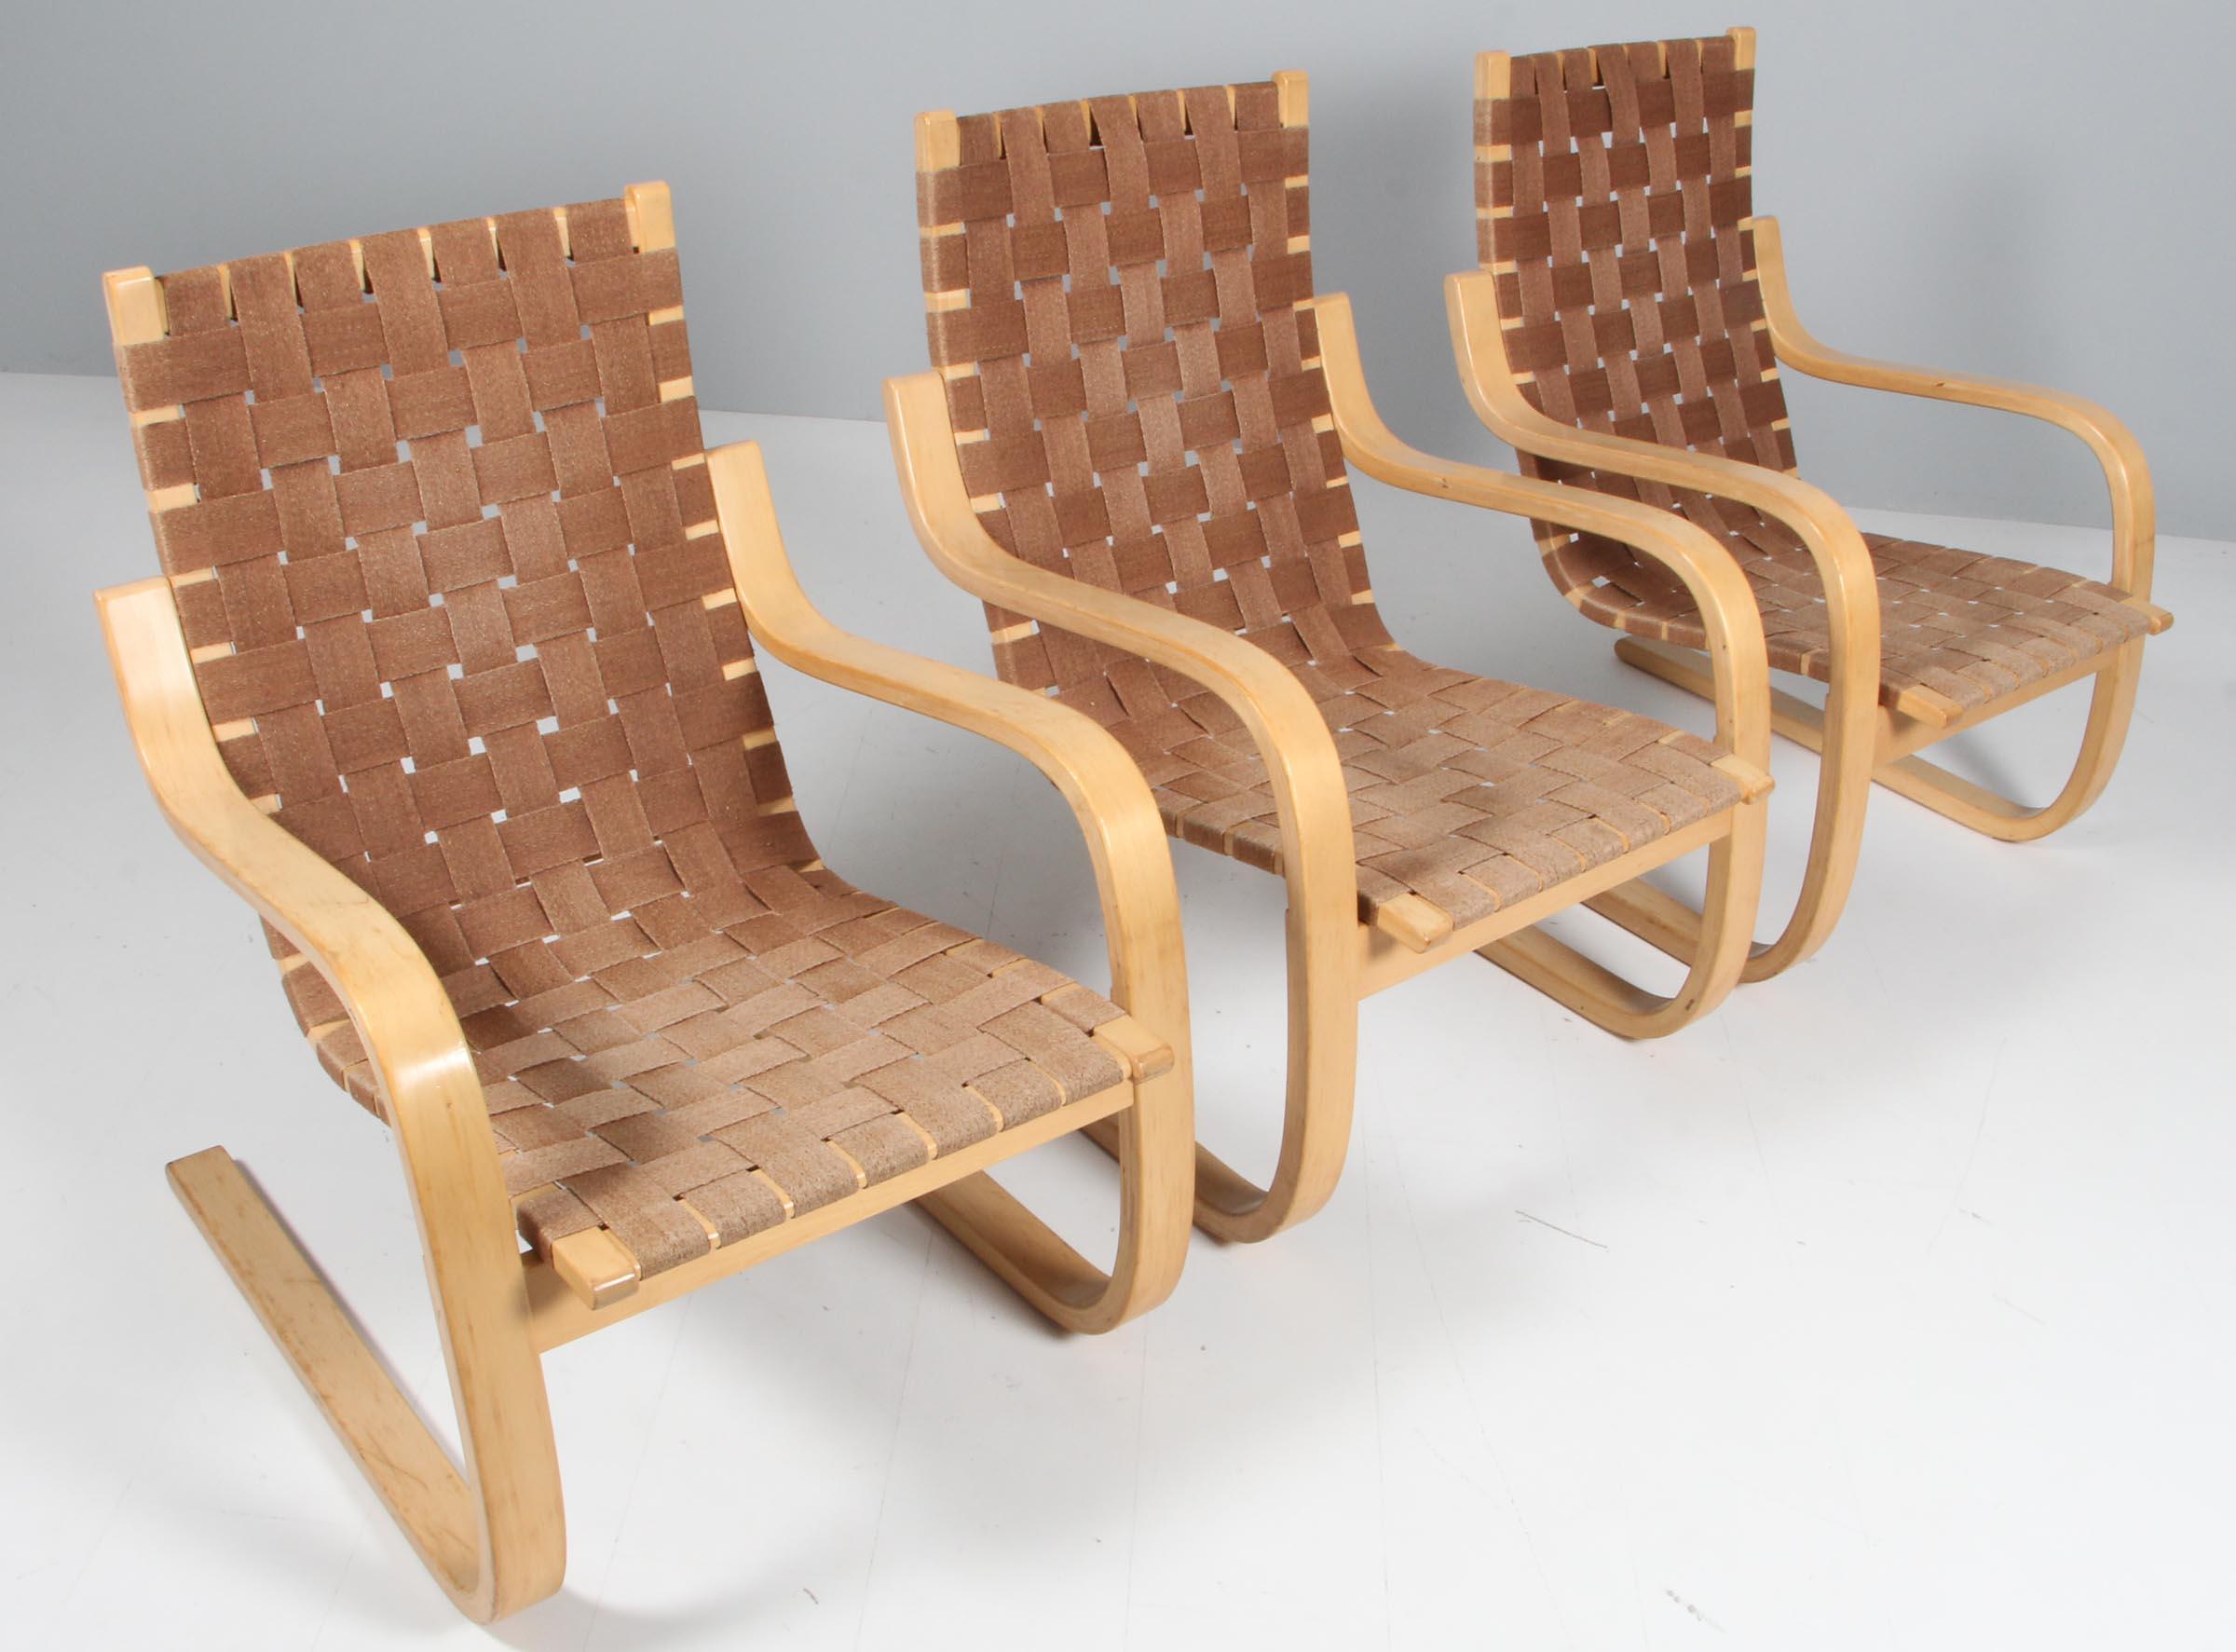 Chaises longues conçues par Alvar Aalto, fabriquées, vers 1960.

Contreplaqué de bouleau courbé et fibre végétale tressée. 

 